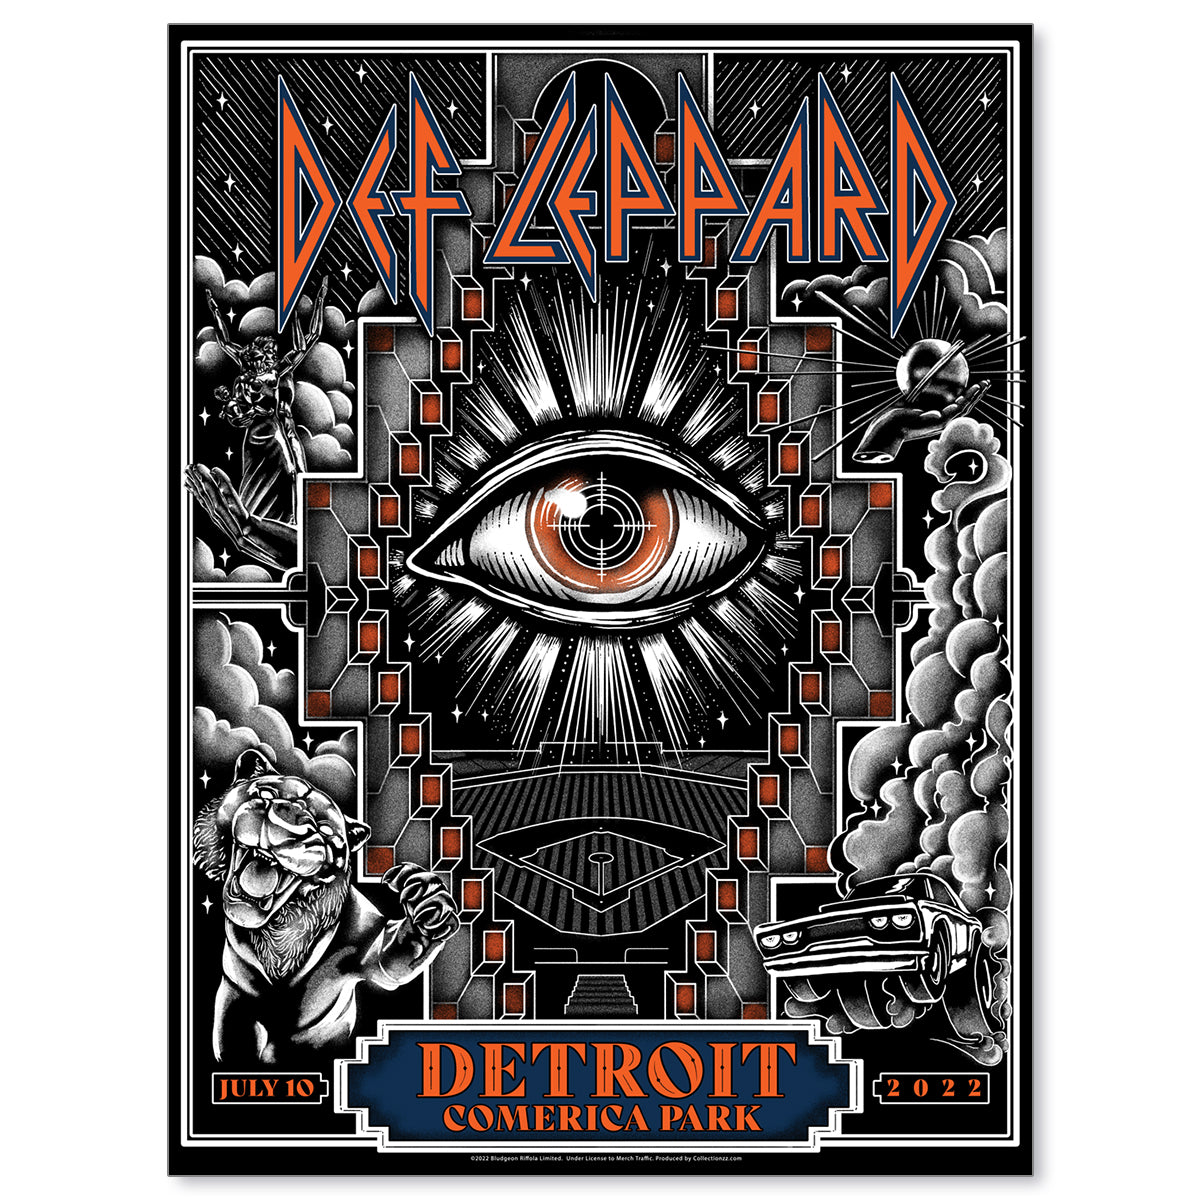 Def Leppard Detroit July 10, 2022 The Stadium Tour